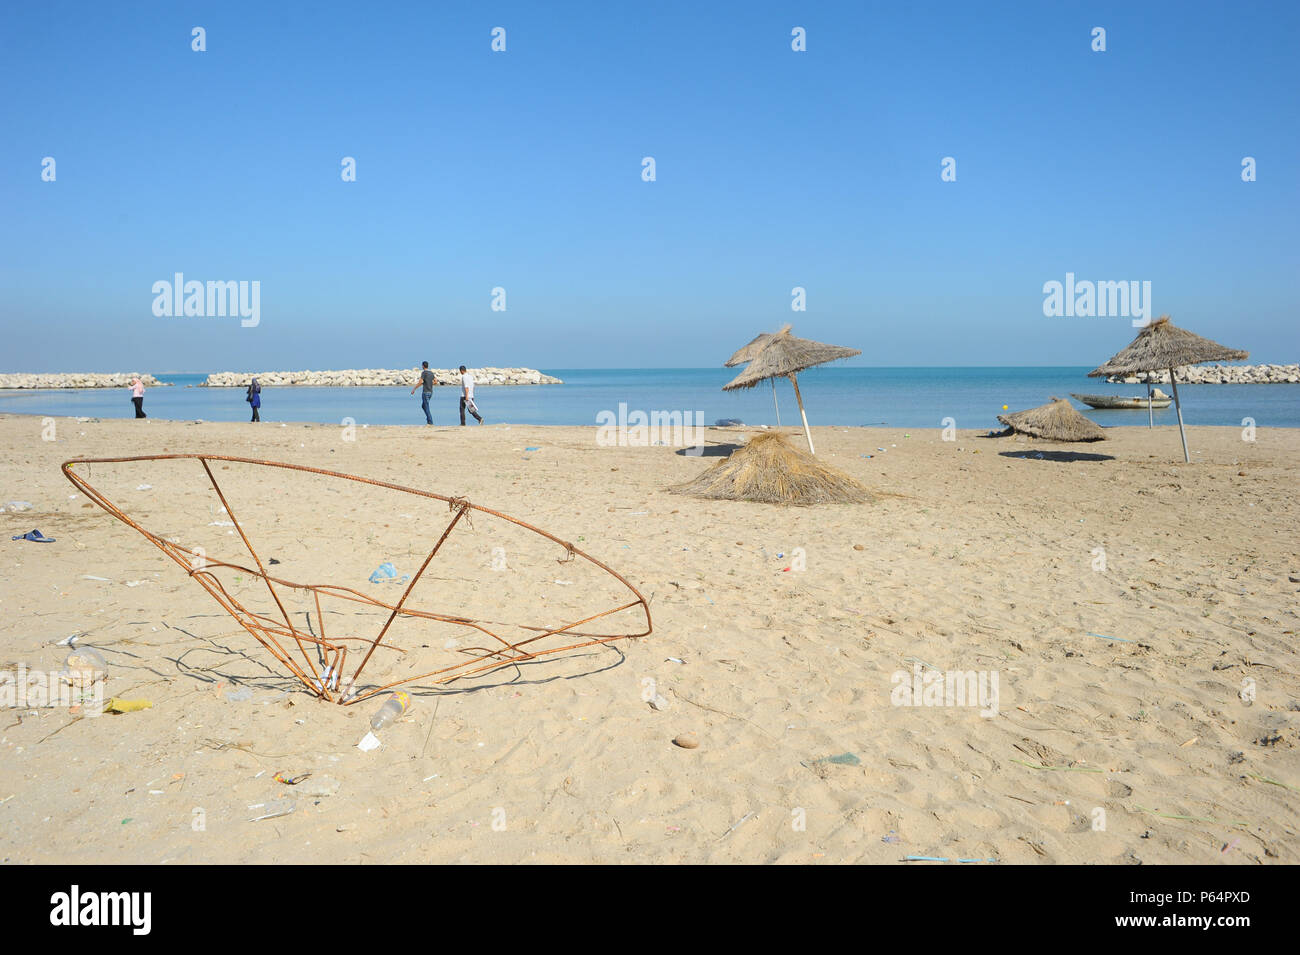 Ottobre 21, 2014 - Hammam-Lif, Tunisia: Vista della spiaggia di Hammam-Lif, un sobborgo meridionale della capitale Tunisi. Questo usato per essere una bella spiaggia turistica ma è ora abbandonata. La plage de Hammam-Lif, autrefois une attrazione touristique, laissee est l' abbandono.*** Francia / NESSUNA VENDITA A MEDIA FRANCESI *** Foto Stock